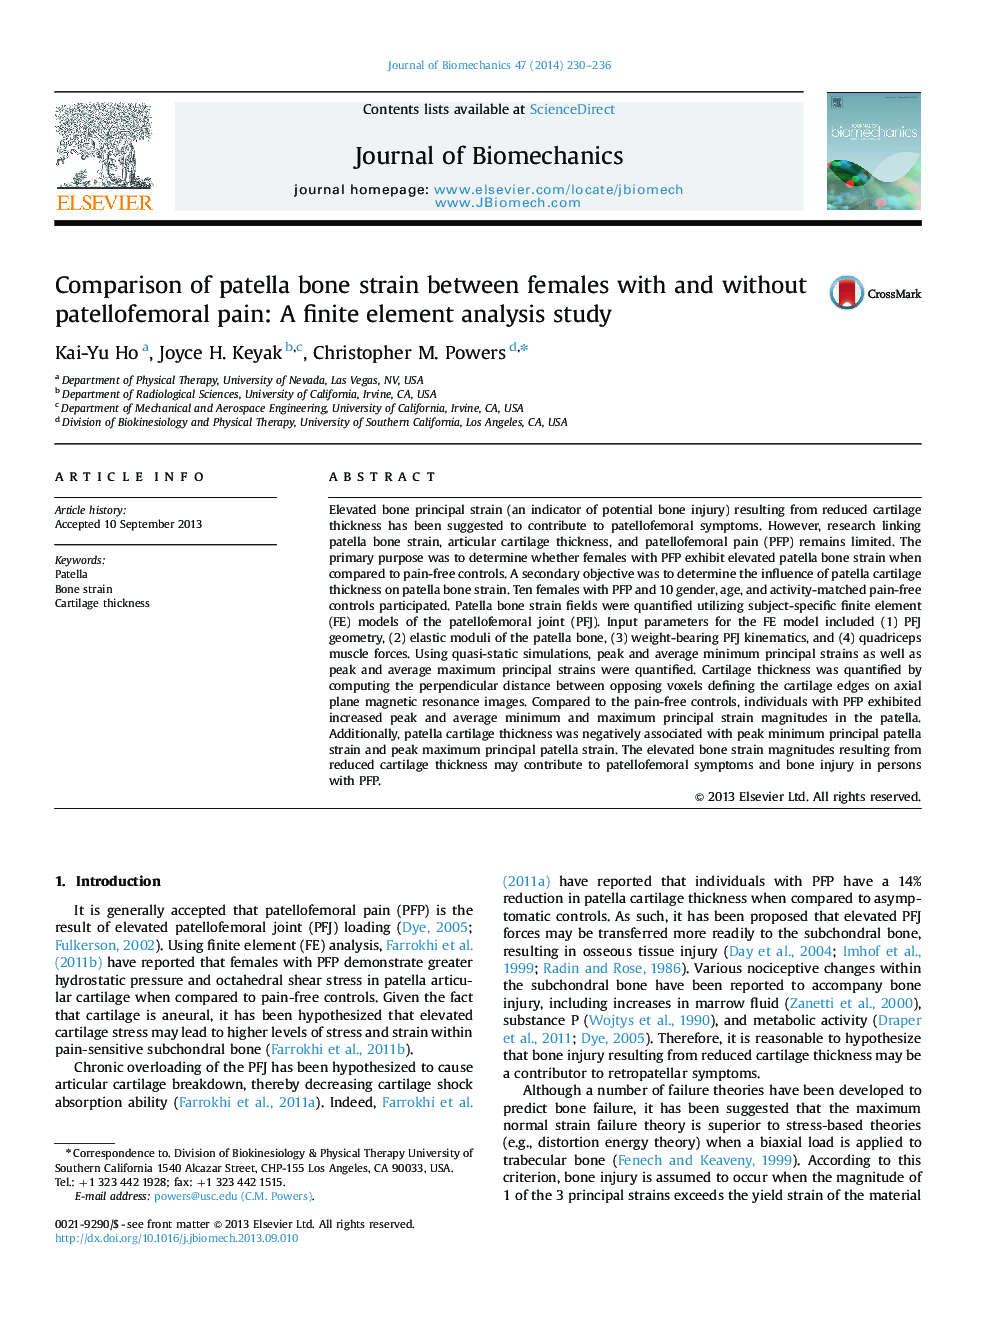 مقایسه فشار استخوان پاتلا در زنان مبتلا به درد پاتلوفمورال و بدون آن: یک مطالعه تحلیل عاملی محدود 